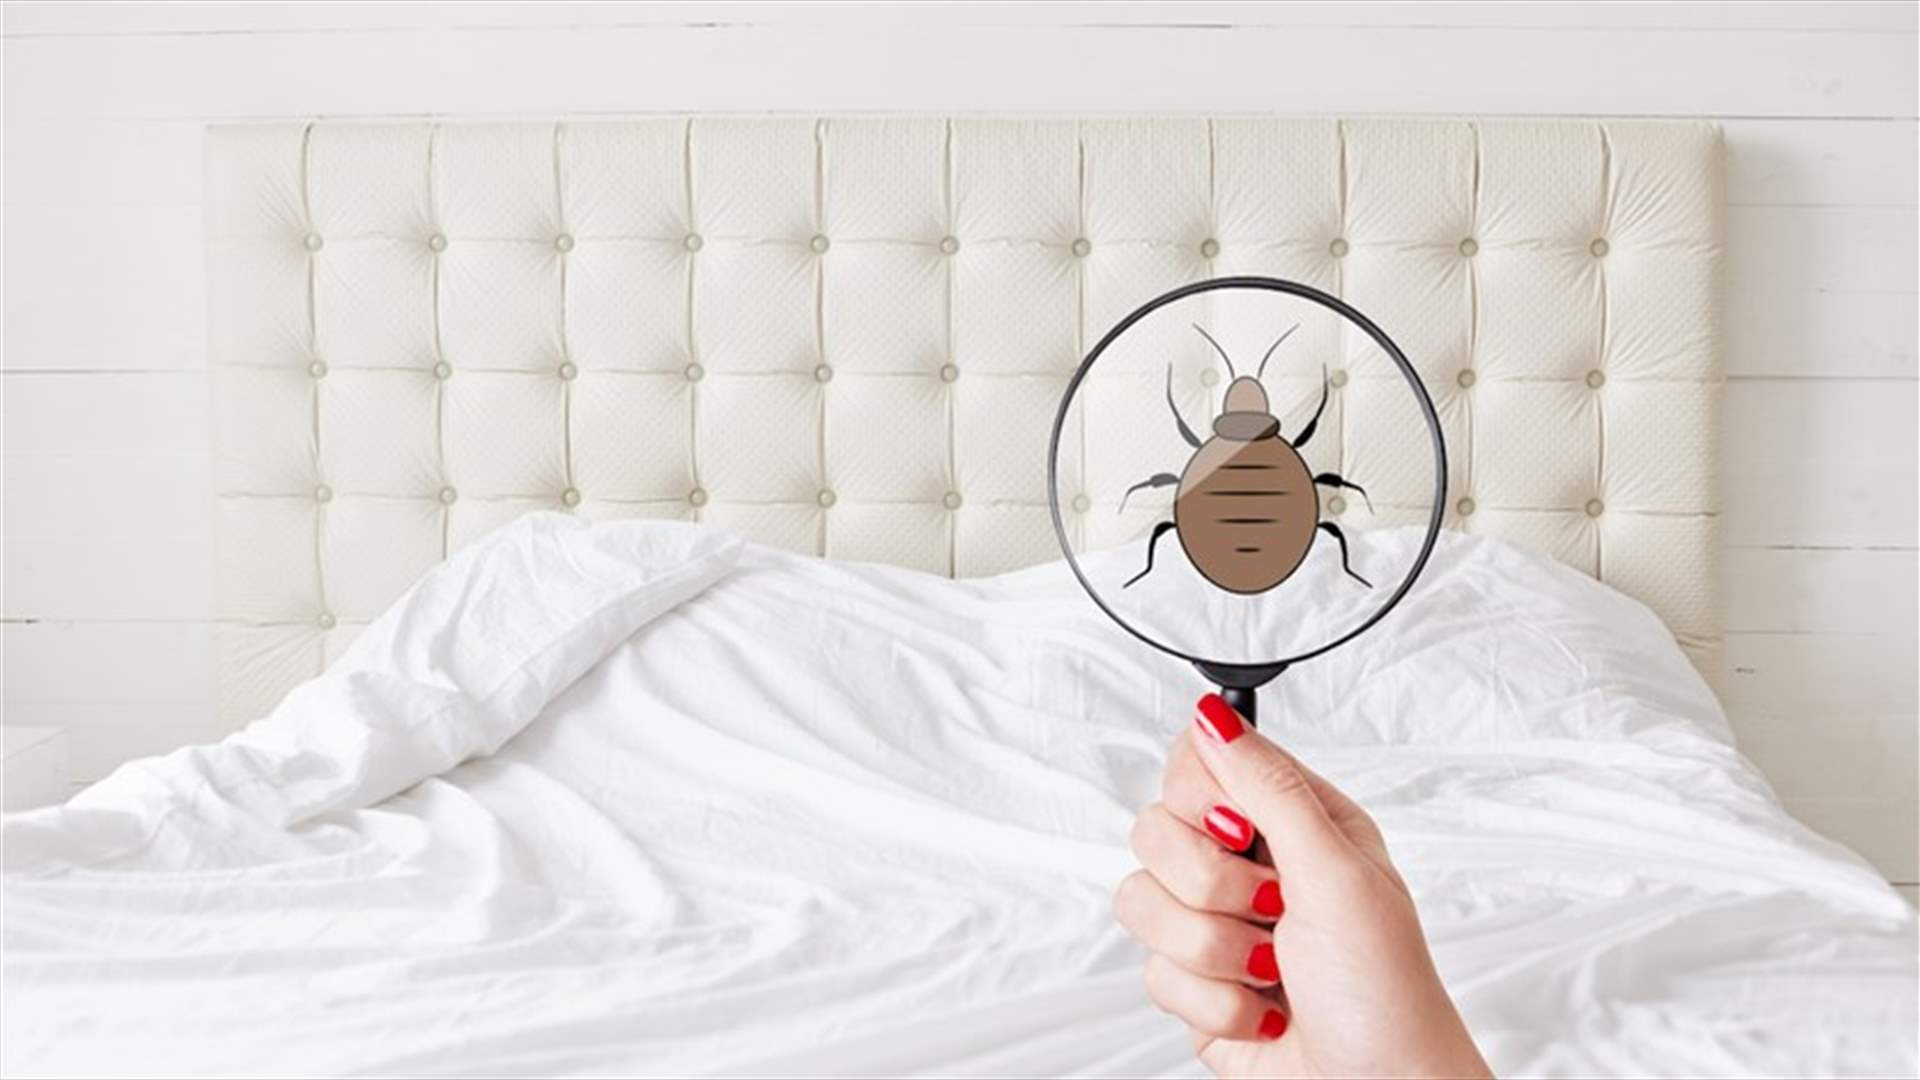 انتبهوا... مؤشرات تدلّ على وجود حشرات الفراش في منزلكم